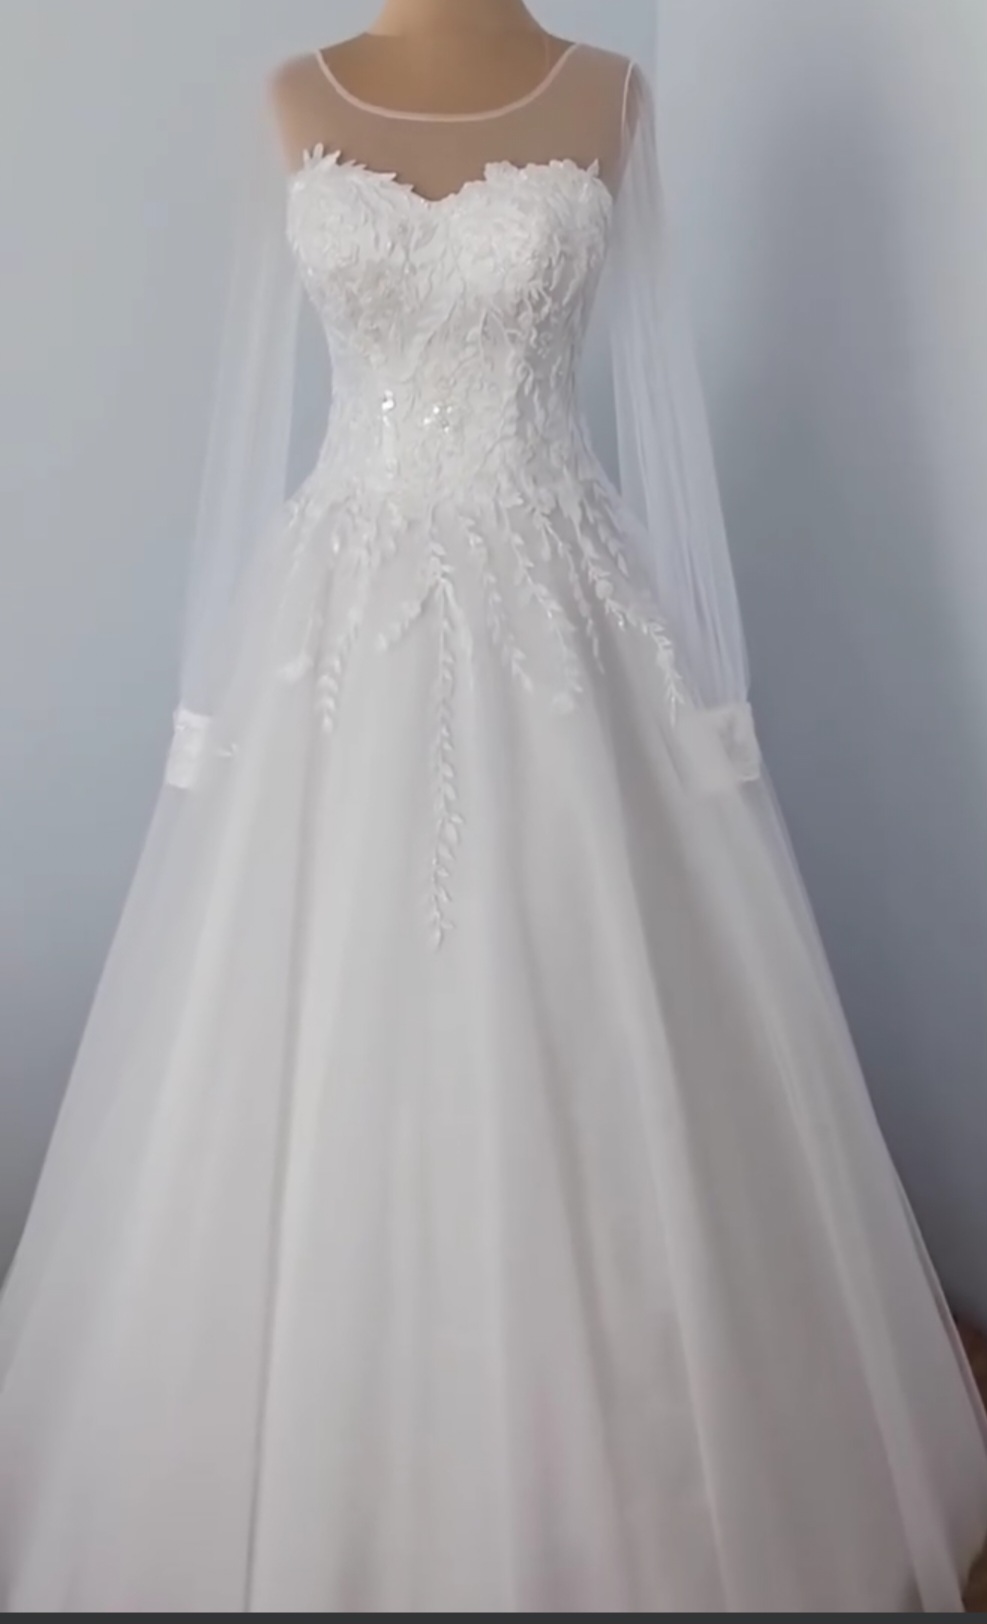 Eladó új fehér menyasszonyi ruha 34-36os méretben.